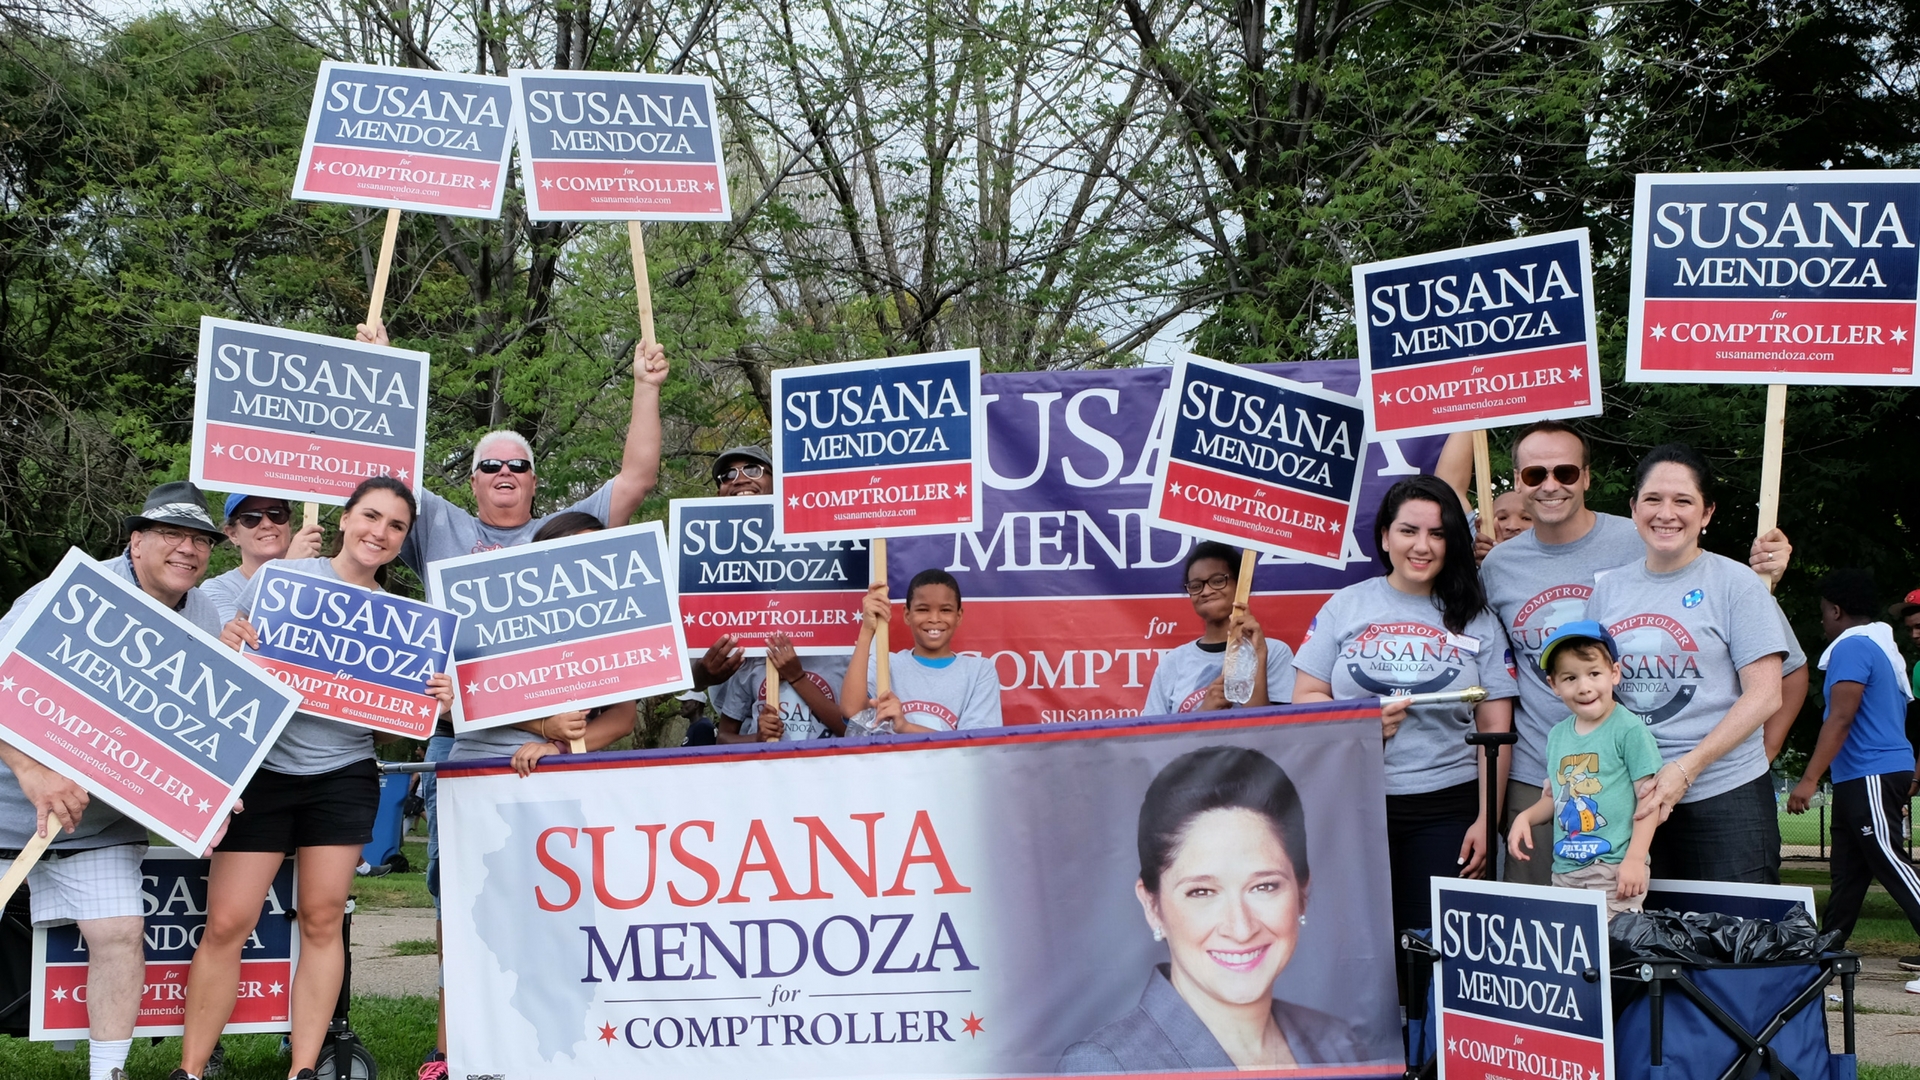 March with Susana Mendoza